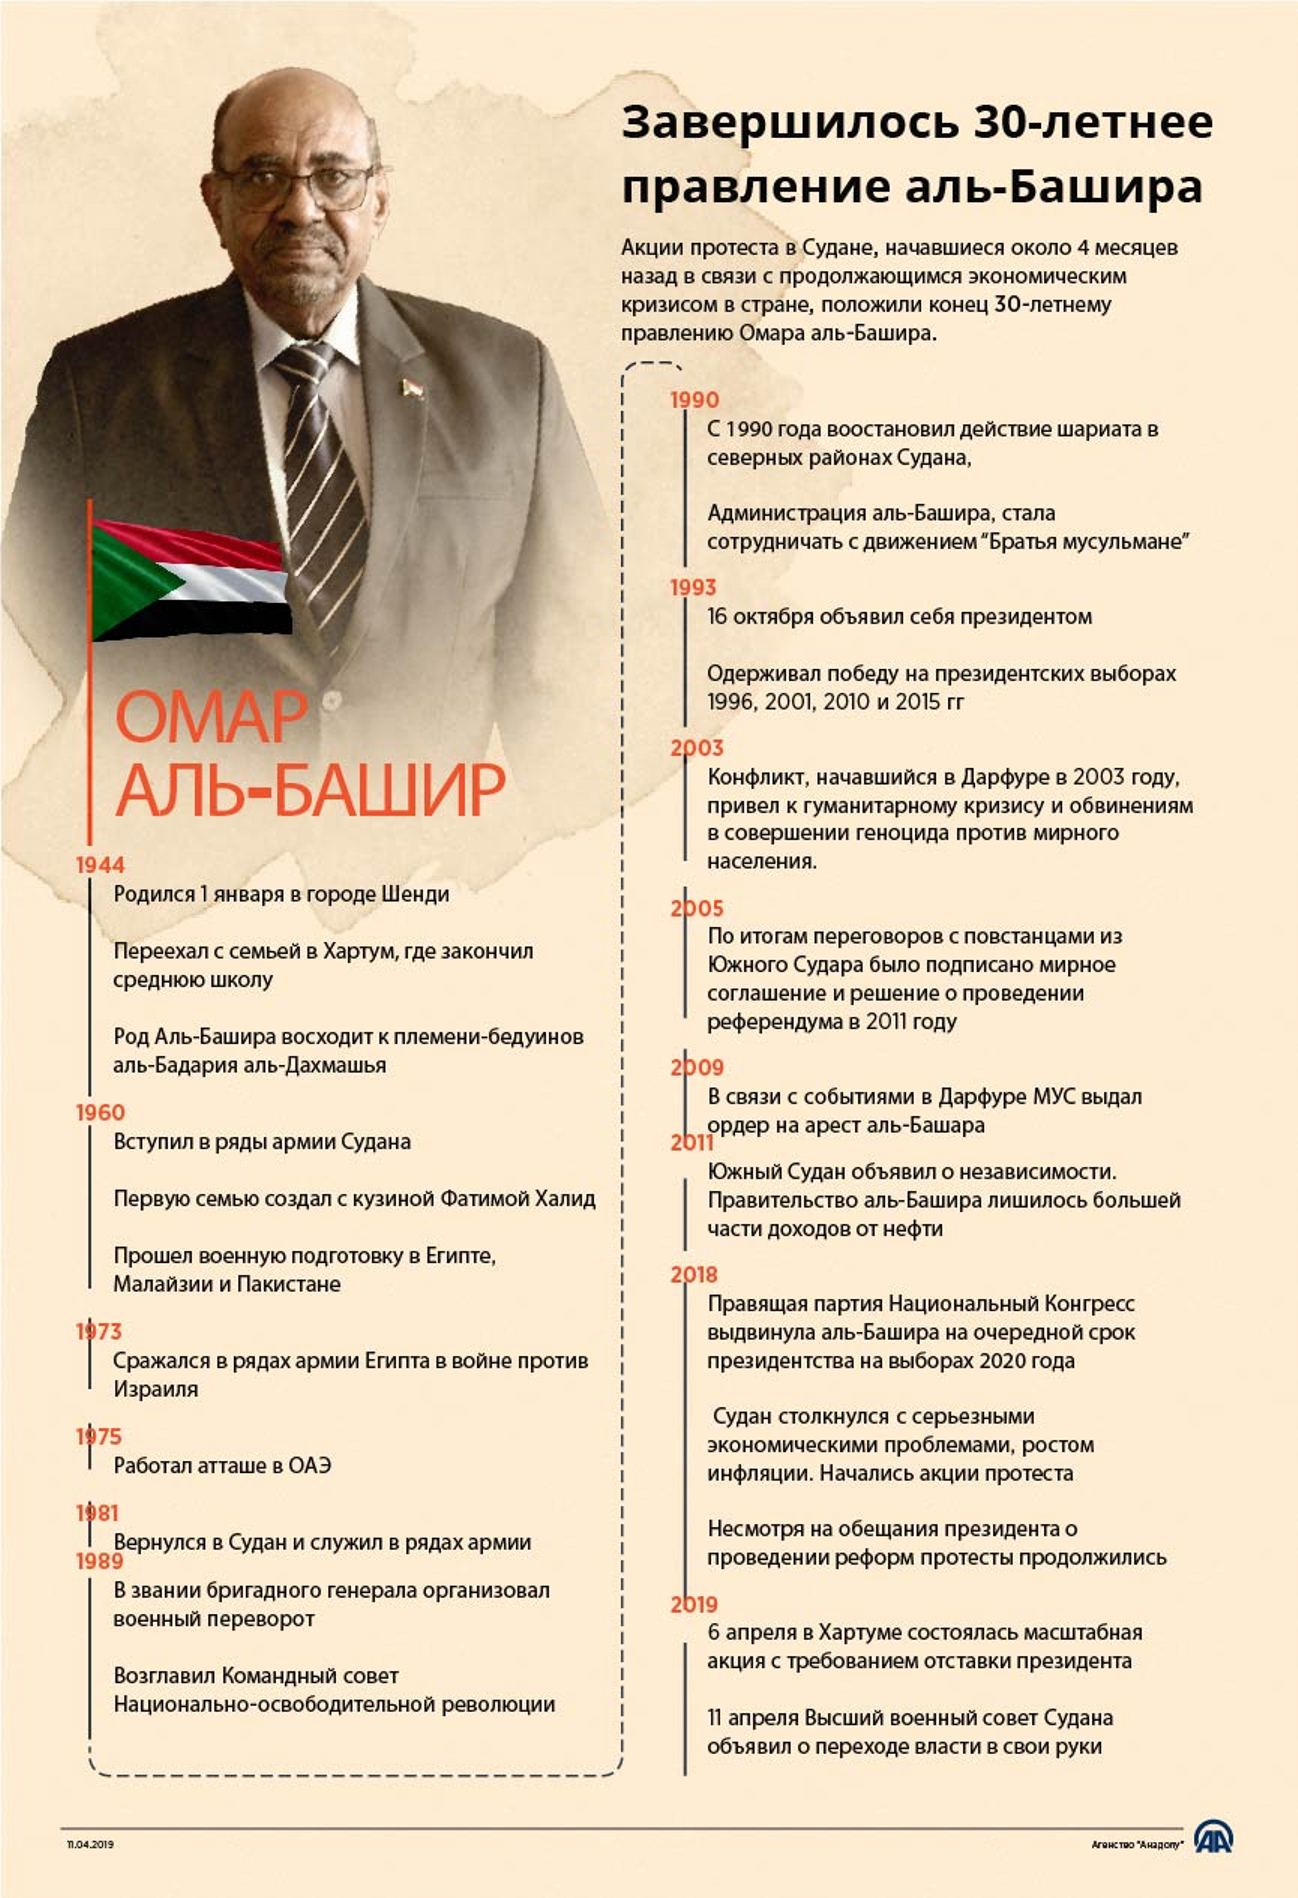 В Судане завершилось 30-летнее правление Омара аль-Башира